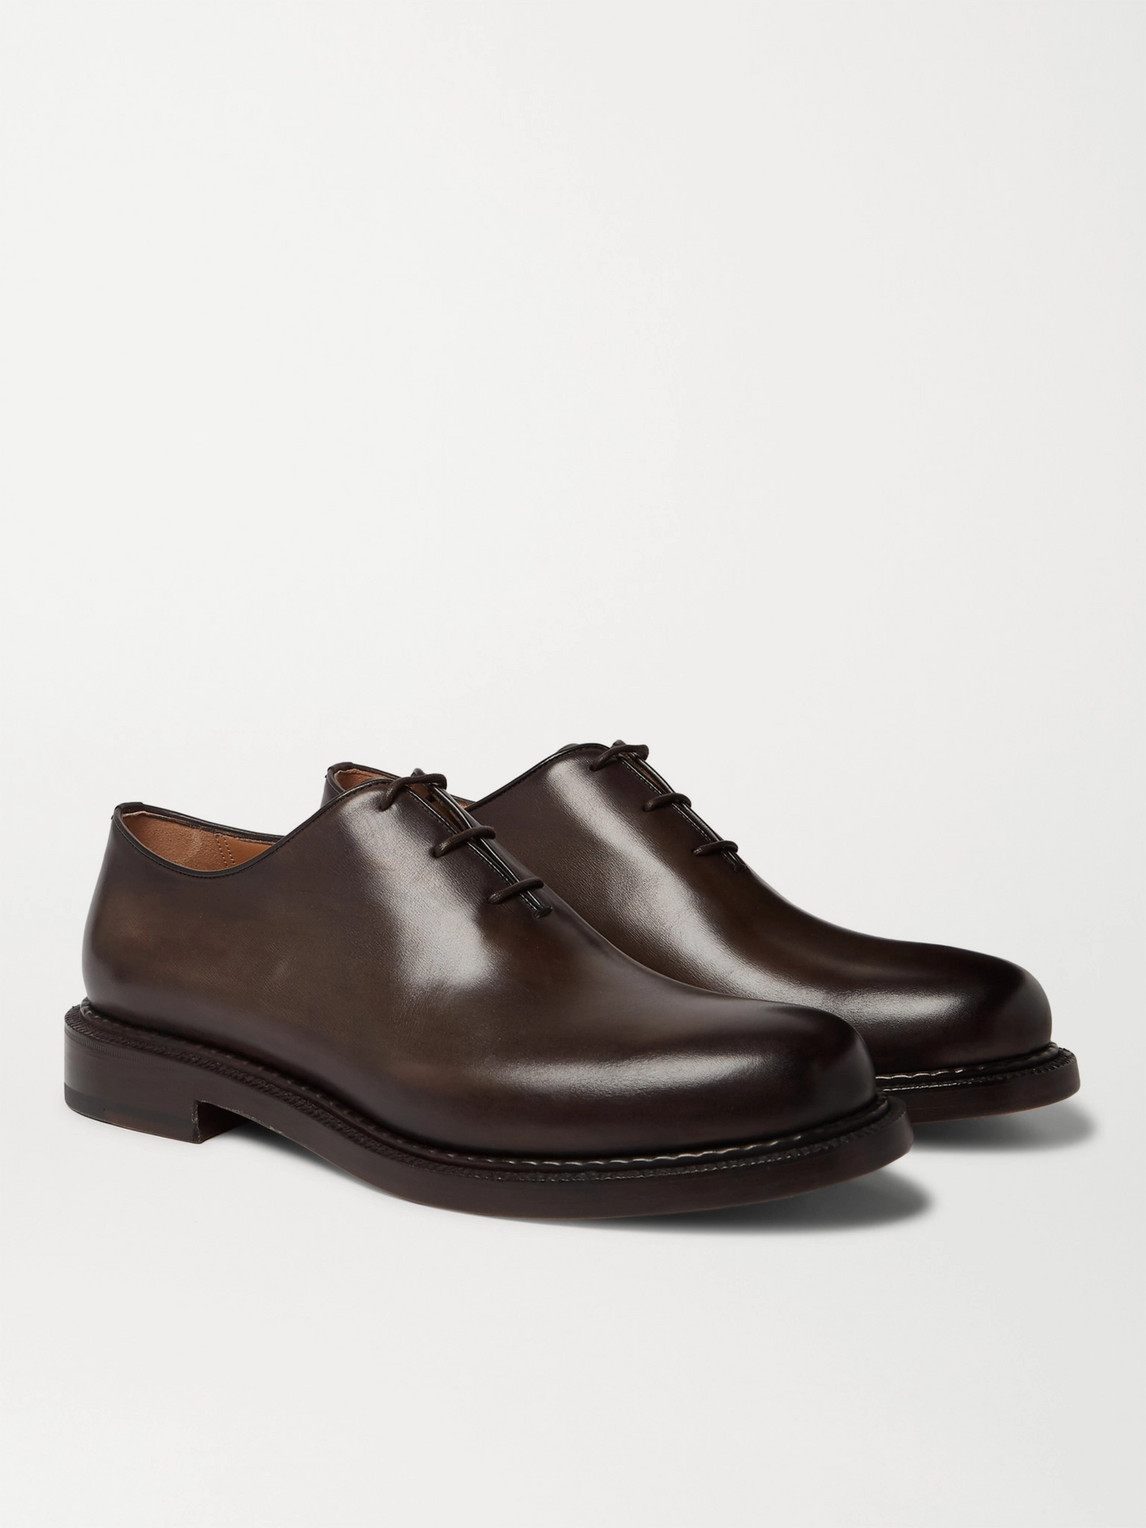 Berluti 1895 Venezia Leather Oxford Shoes In Brown